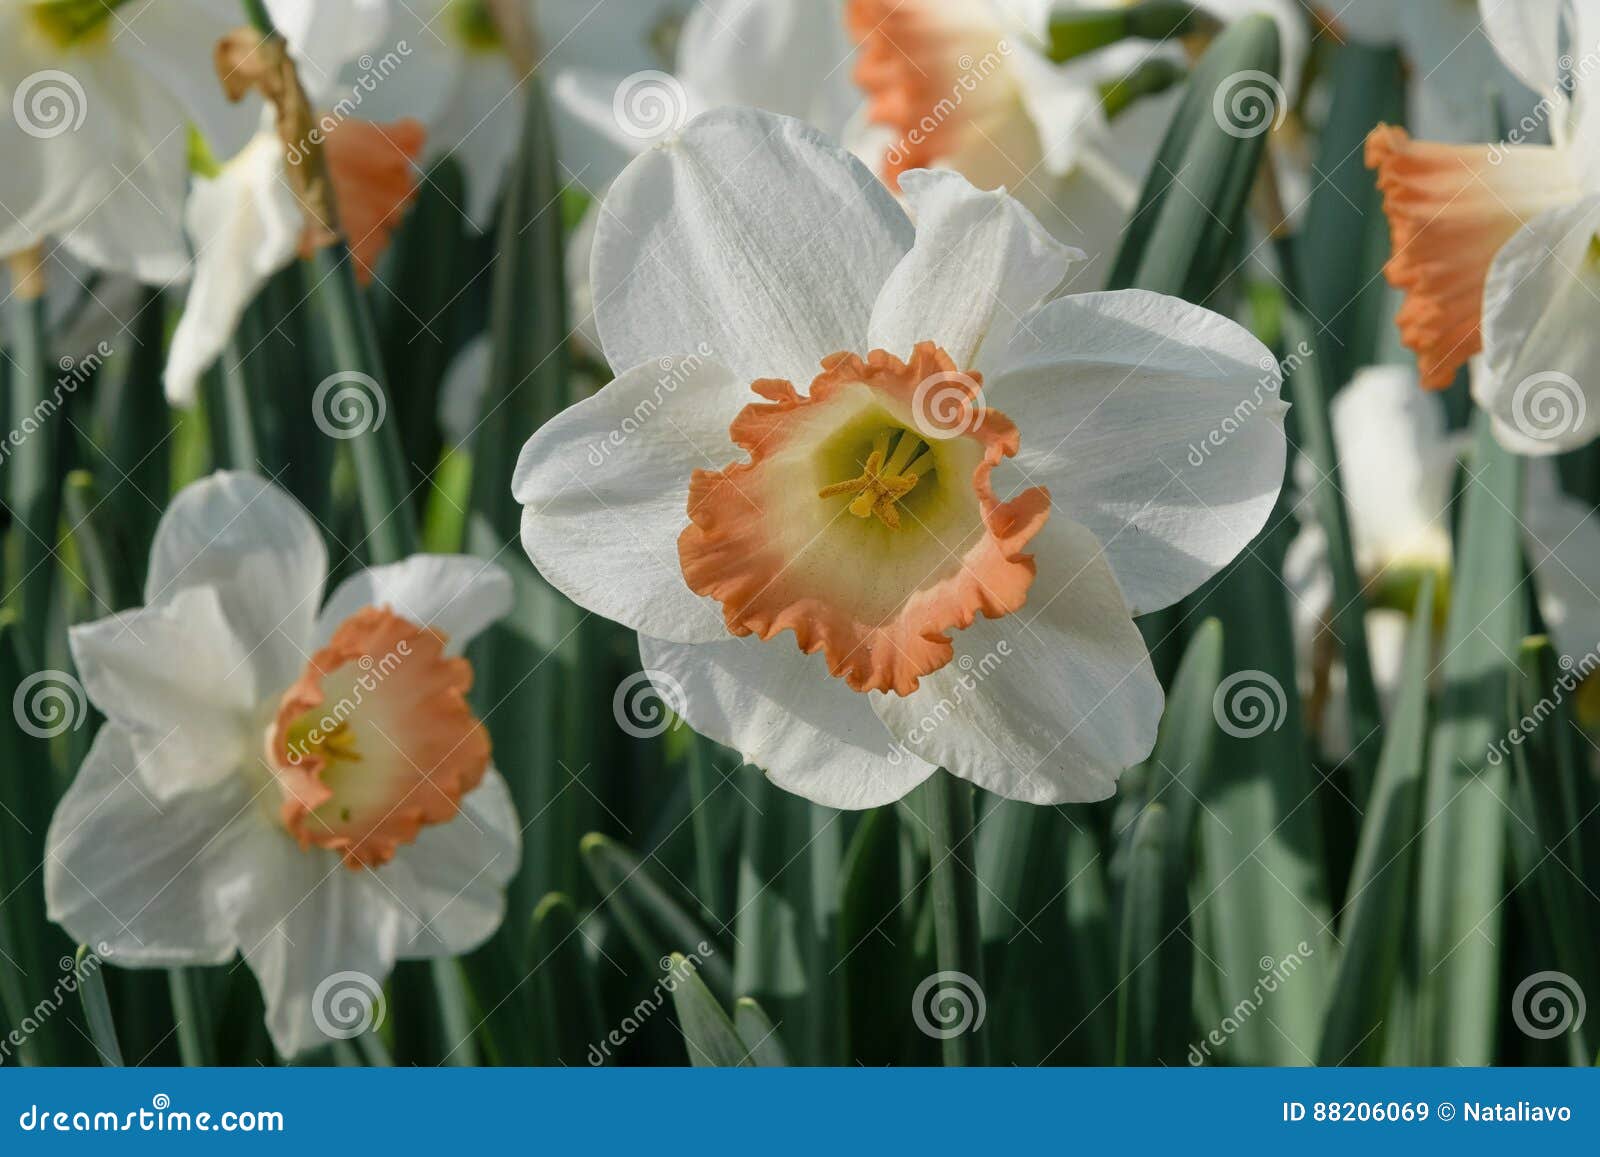 Les Narcisses Blanc-oranges De Floraison Dentellent Le Charme Dans  Keukenhof, Pays-Bas Variété Rare Image stock - Image du flore, floral:  88206069